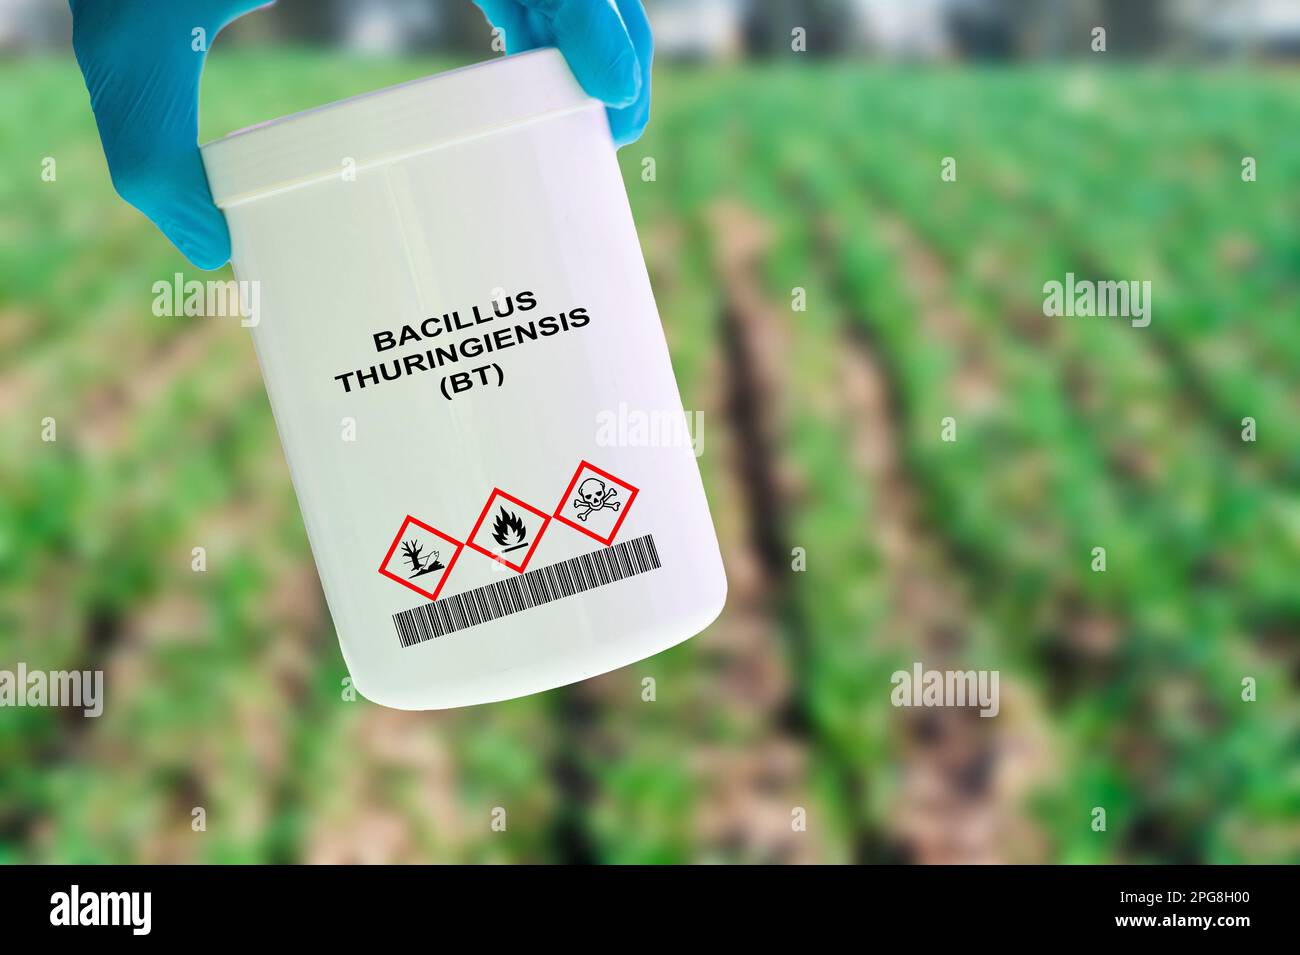 Bacillus thuringiensis (Bt) Pesticida batterico utilizzato per controllare gli insetti nocivi nelle colture. Foto Stock